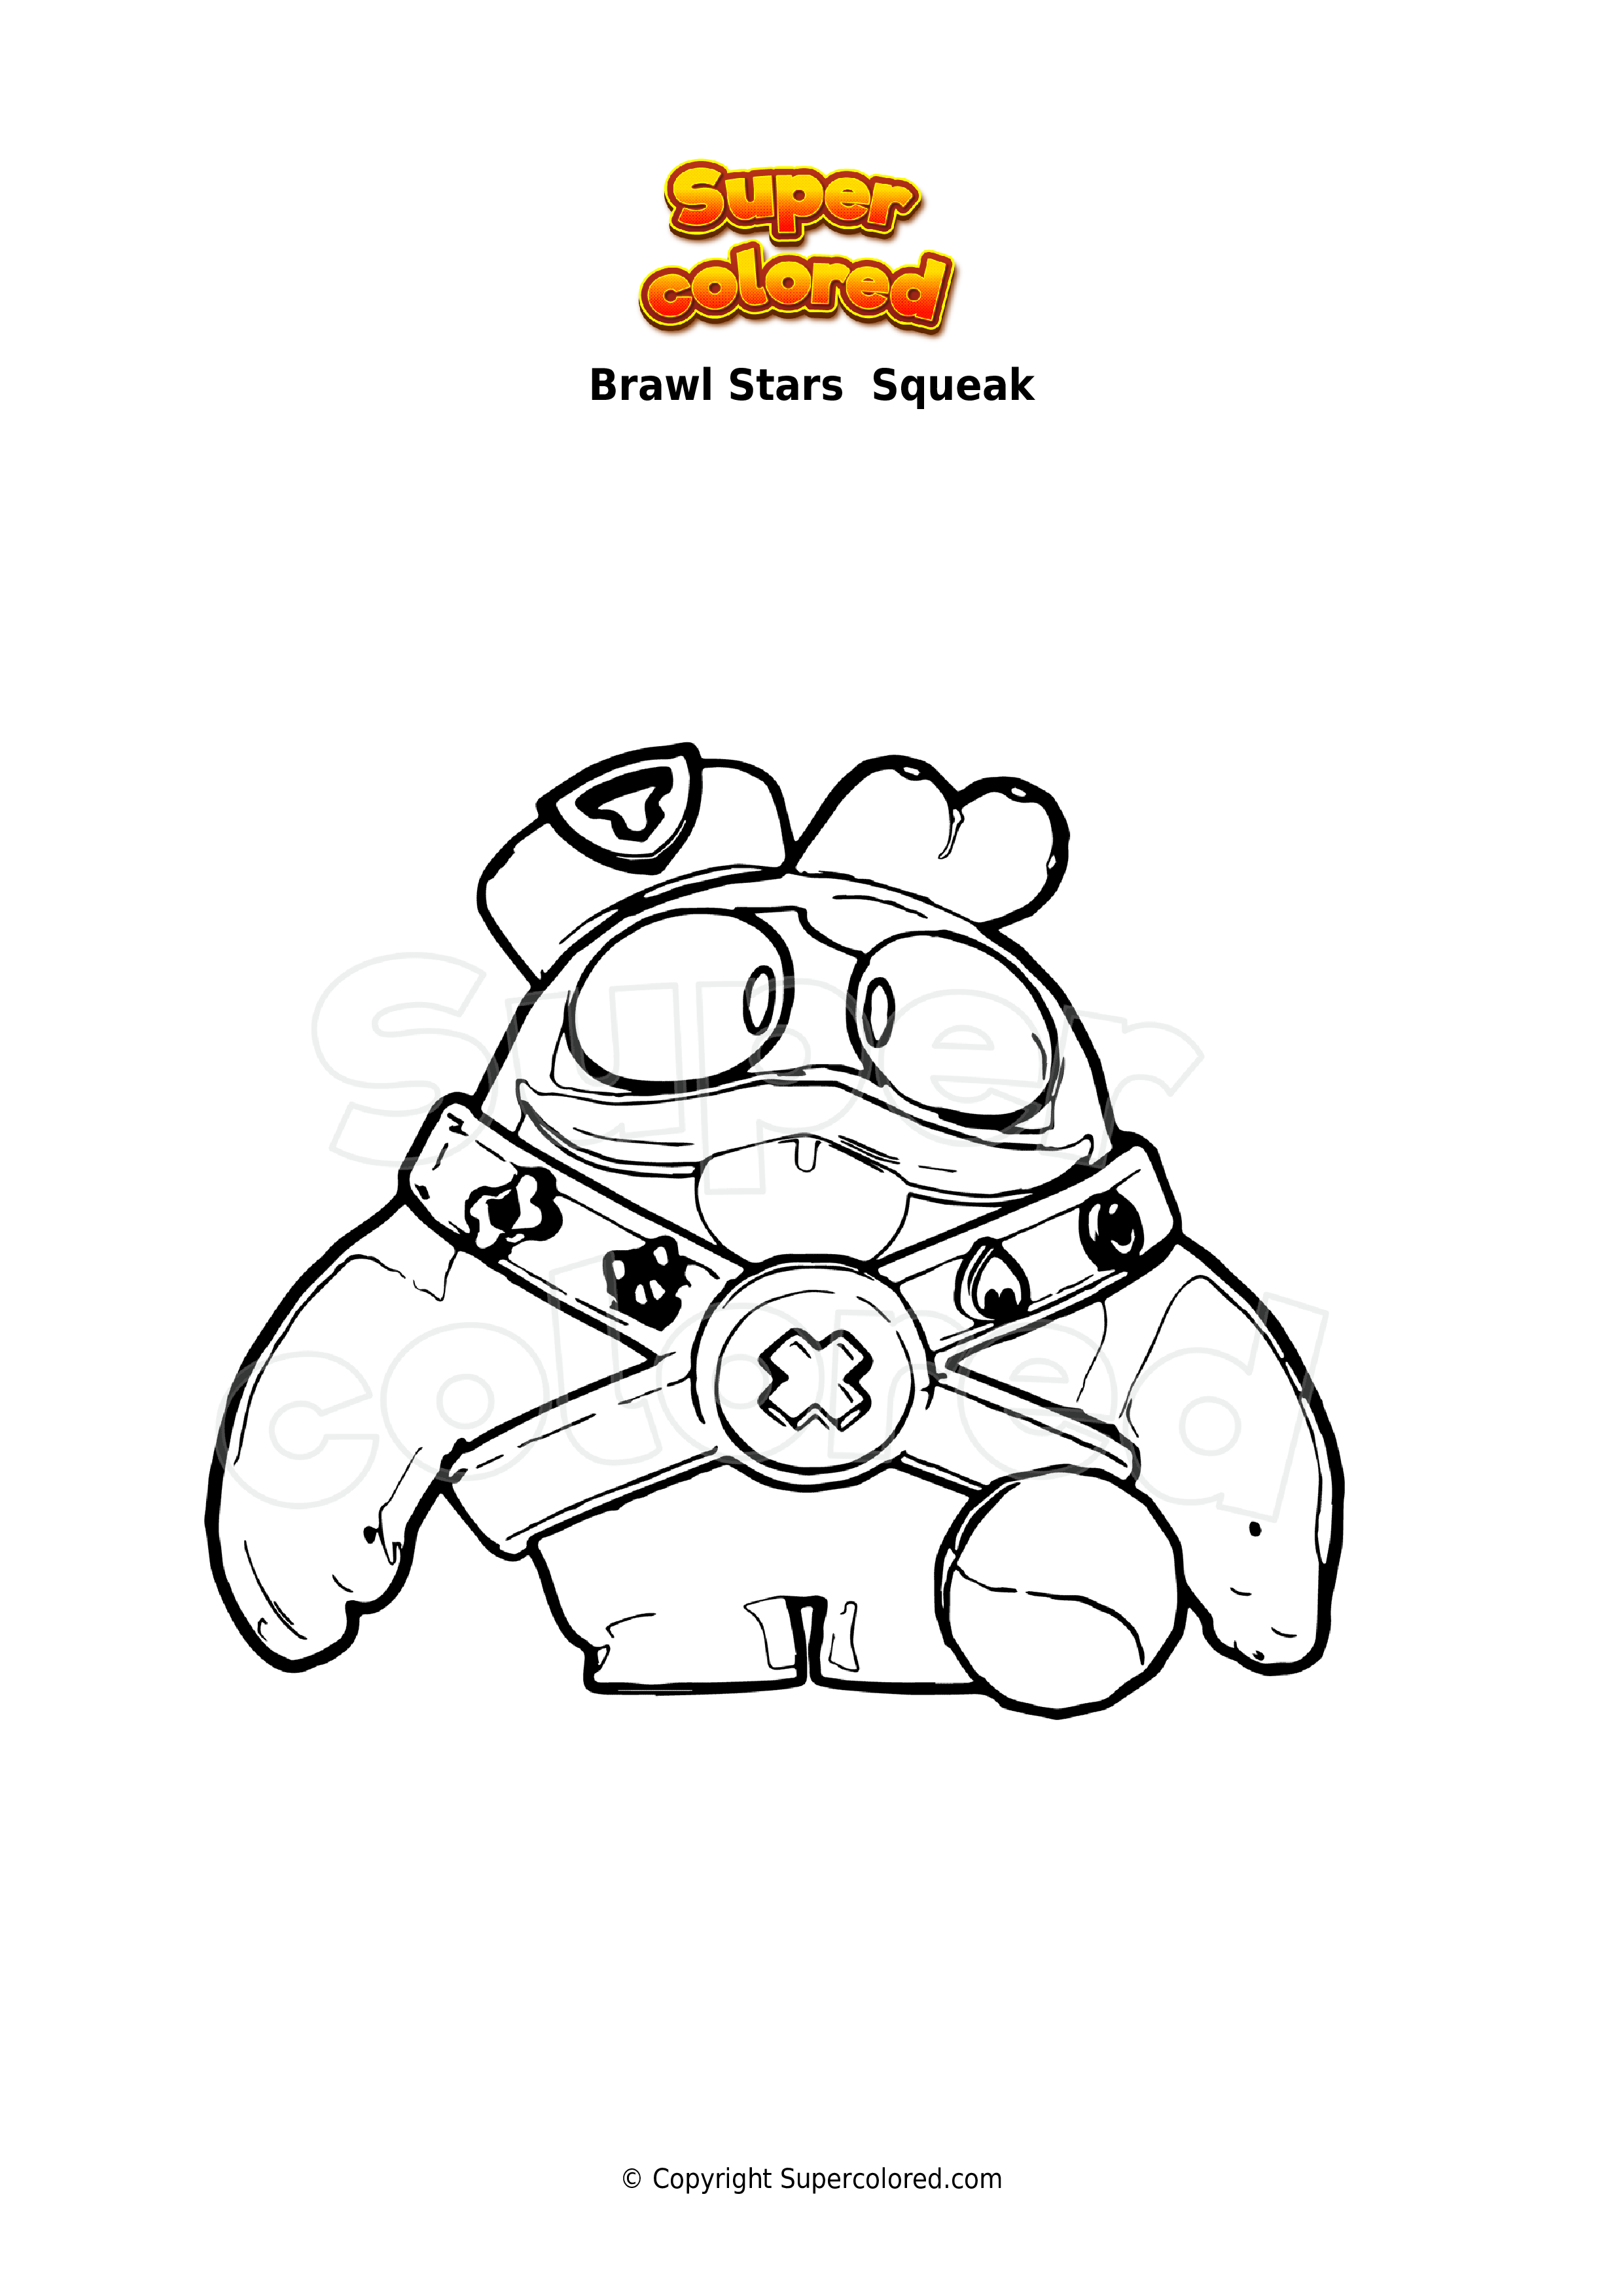 Disegno Da Colorare Brawl Stars Squeak Supercolored Com - disegni per bambini di brawl stars